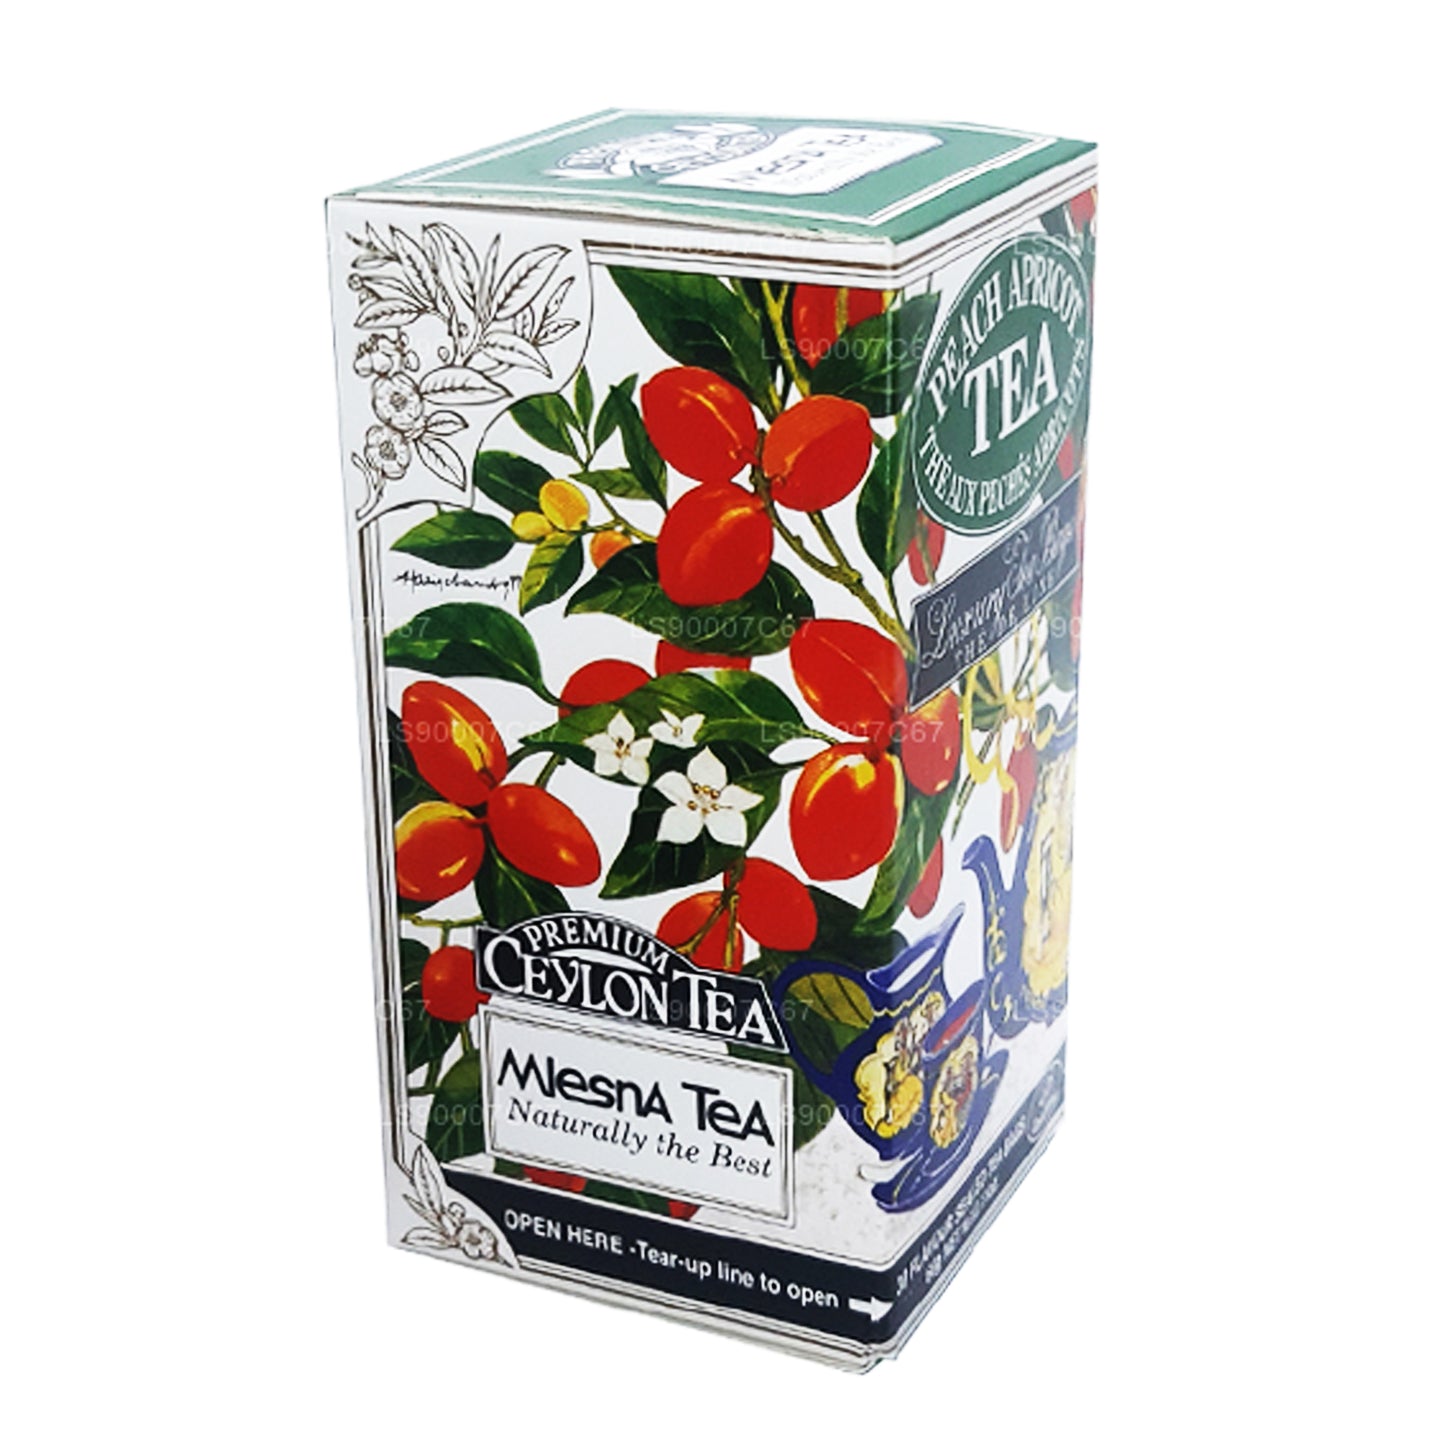 Bolsitas de té de lujo Mlesna Peach Albaricot (60 g)